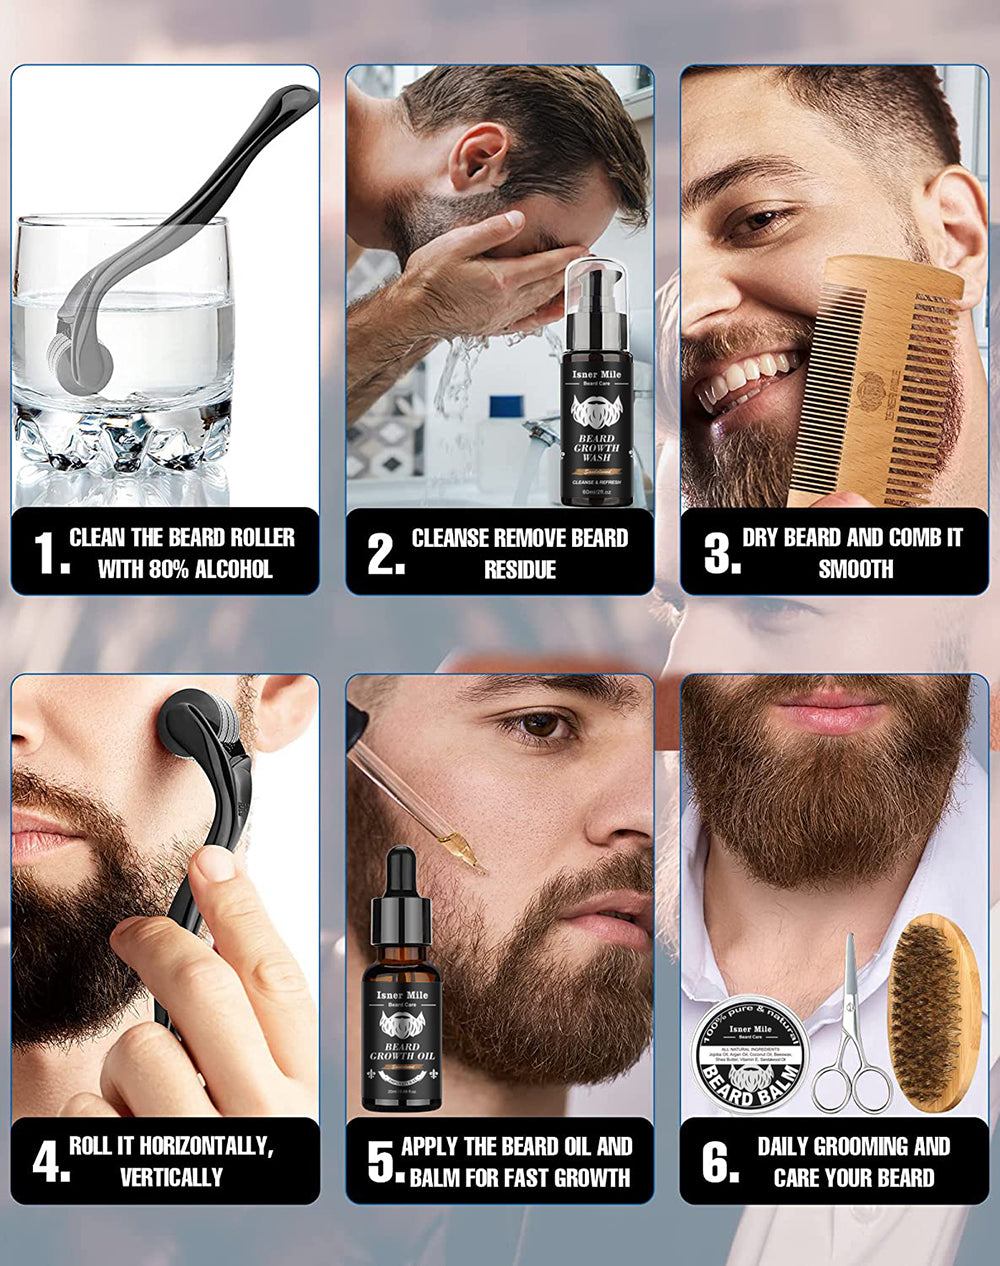 Isner Mile Beard Growth Kit / Sandalwood